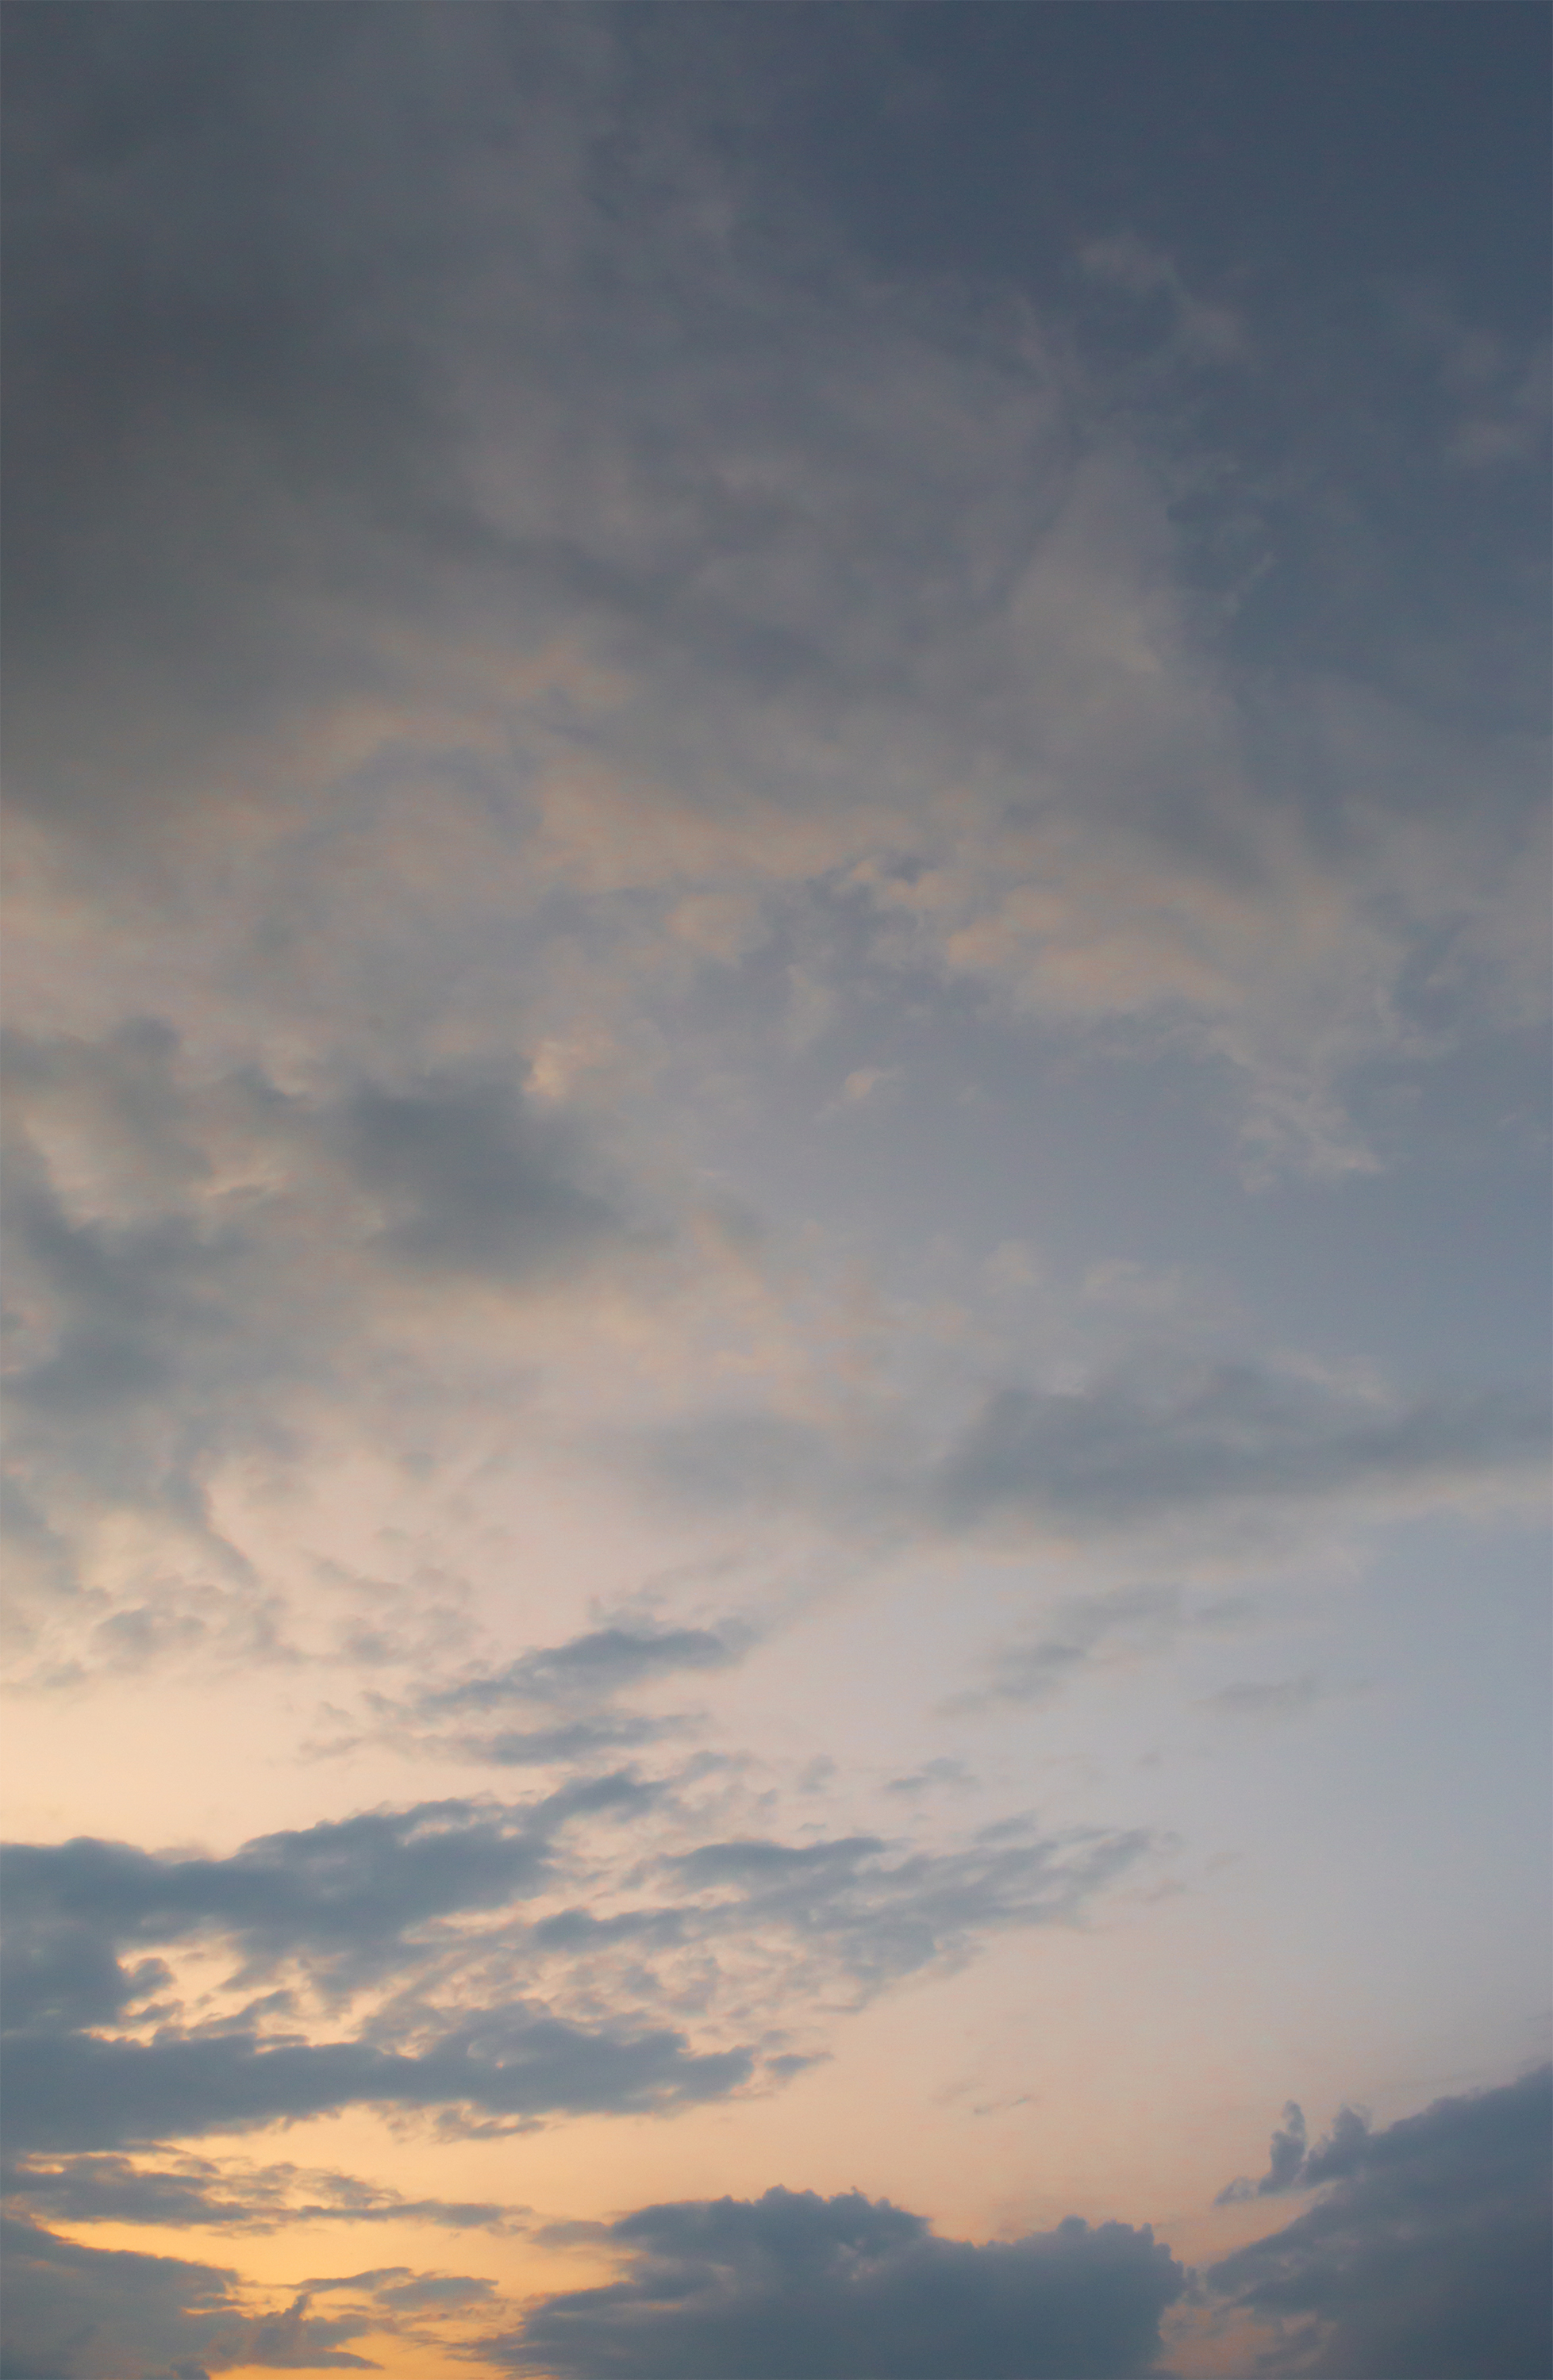 夕暮れ時の空と雲02 無料の高画質フリー写真素材 イメージズラボ